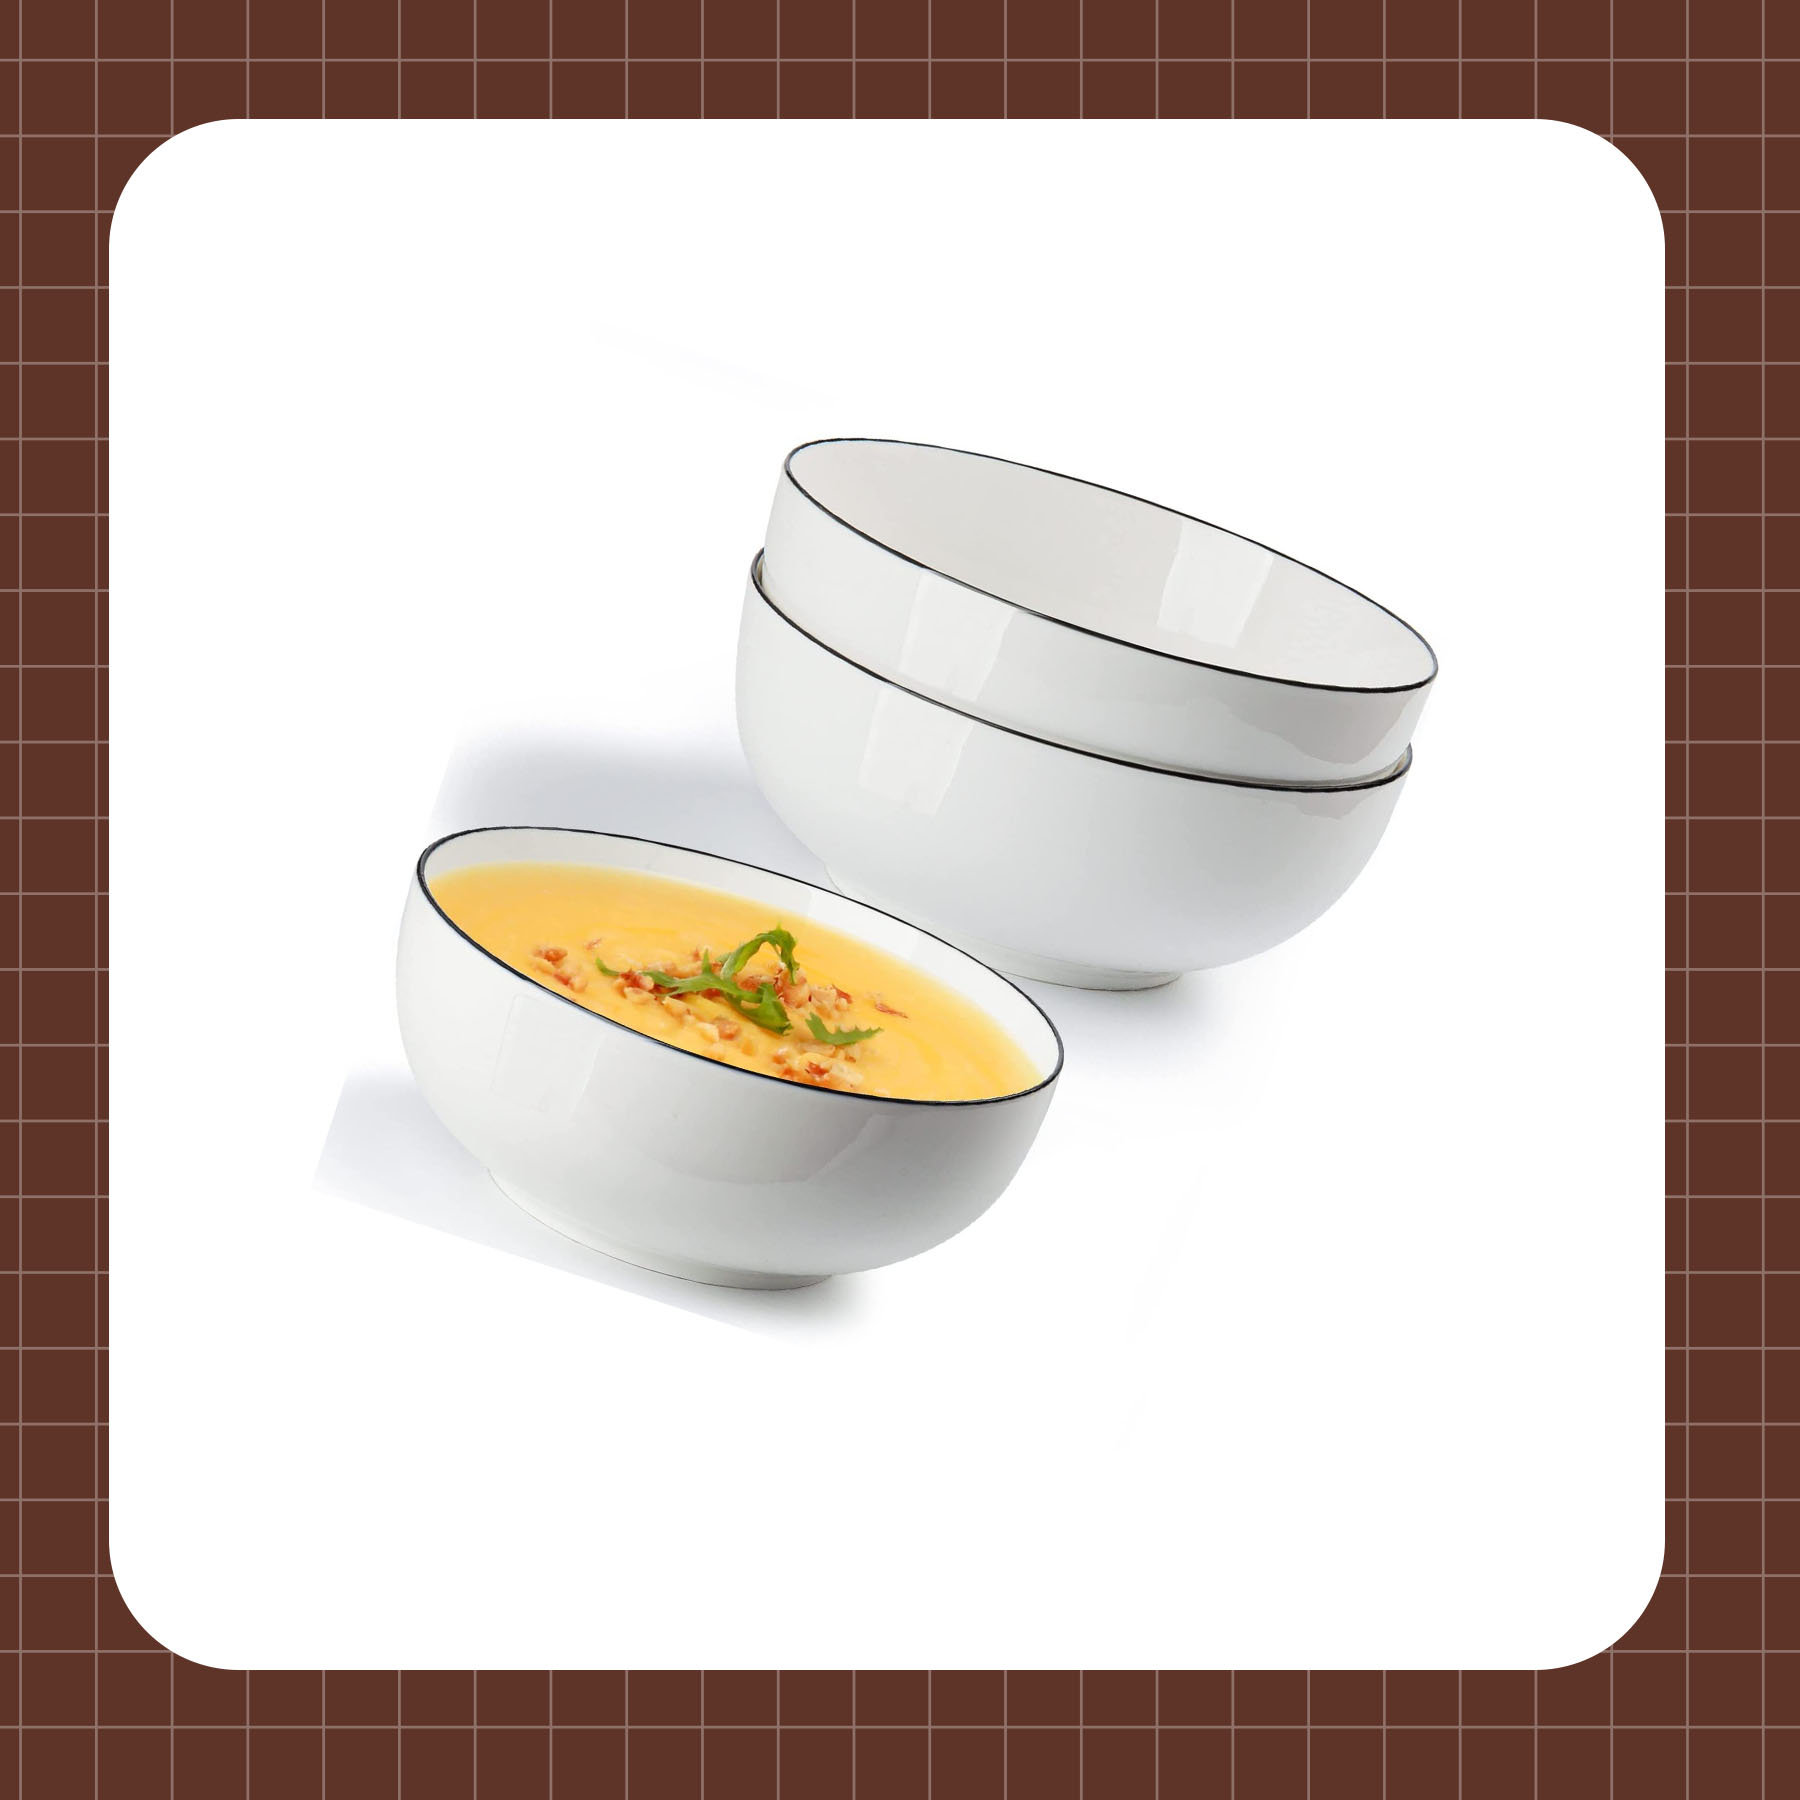 Large Serving Bowls - 60 oz Ceramic Salad Bowl - 8 Inch Serving Bowl Set -  Big Soup Bowl For Kitchen - Microwave & Dishwashers Safe - Pho Fruit Pasta  Popcorn Bowl - Set of 3 - White : : Home